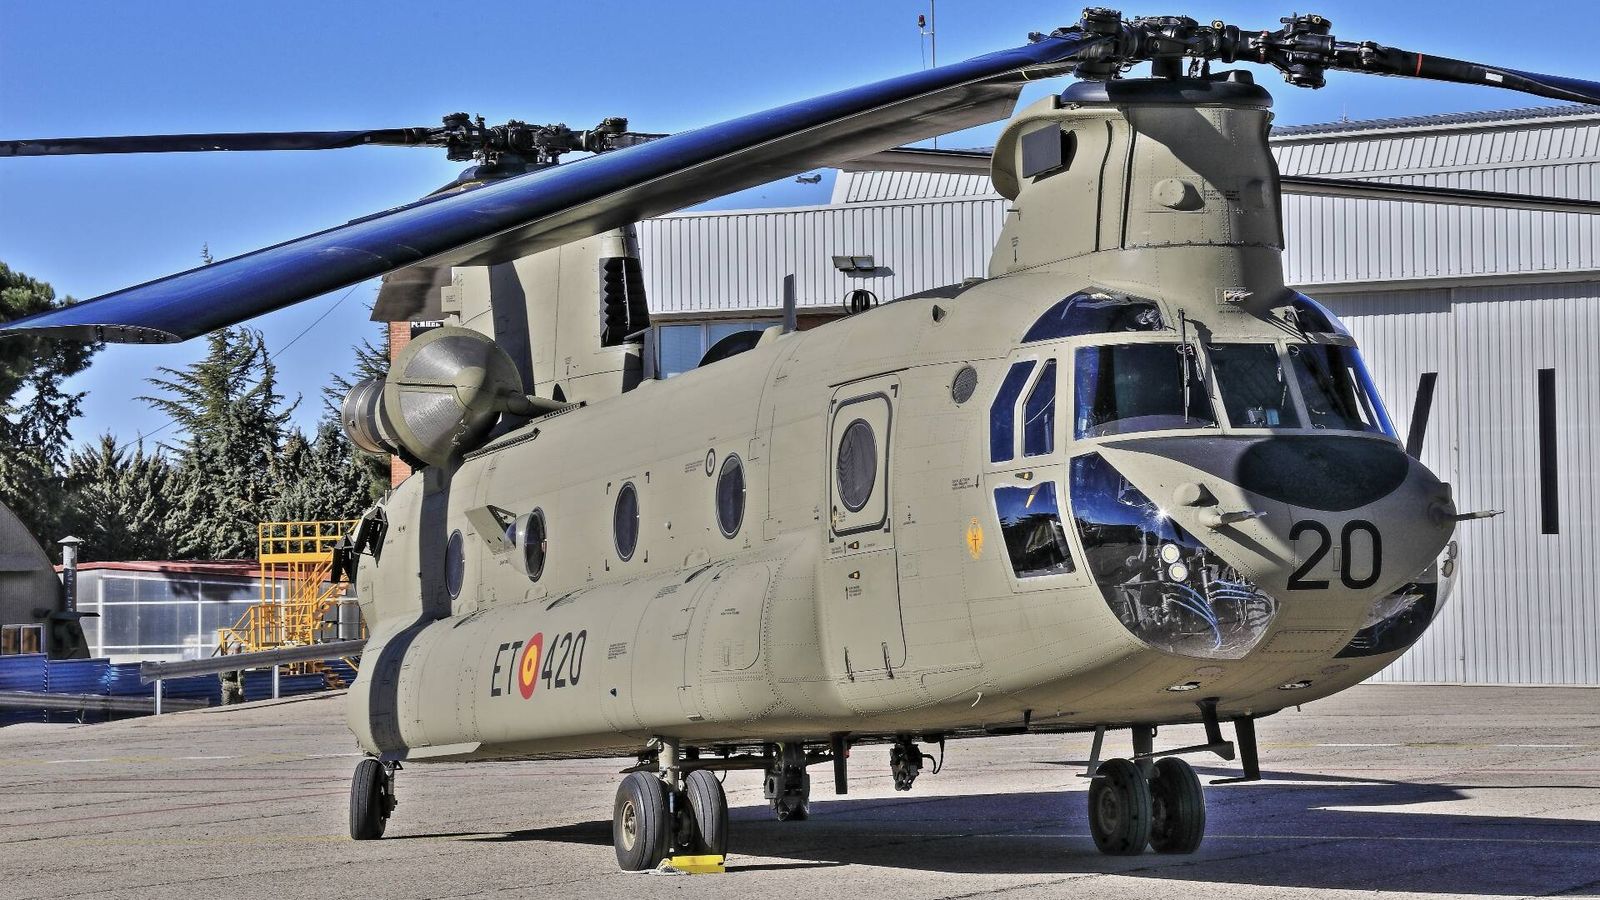 El CH-47F en la plataforma de la Base de FAMET en Colmenar Viejo (Madrid). (J. F.)